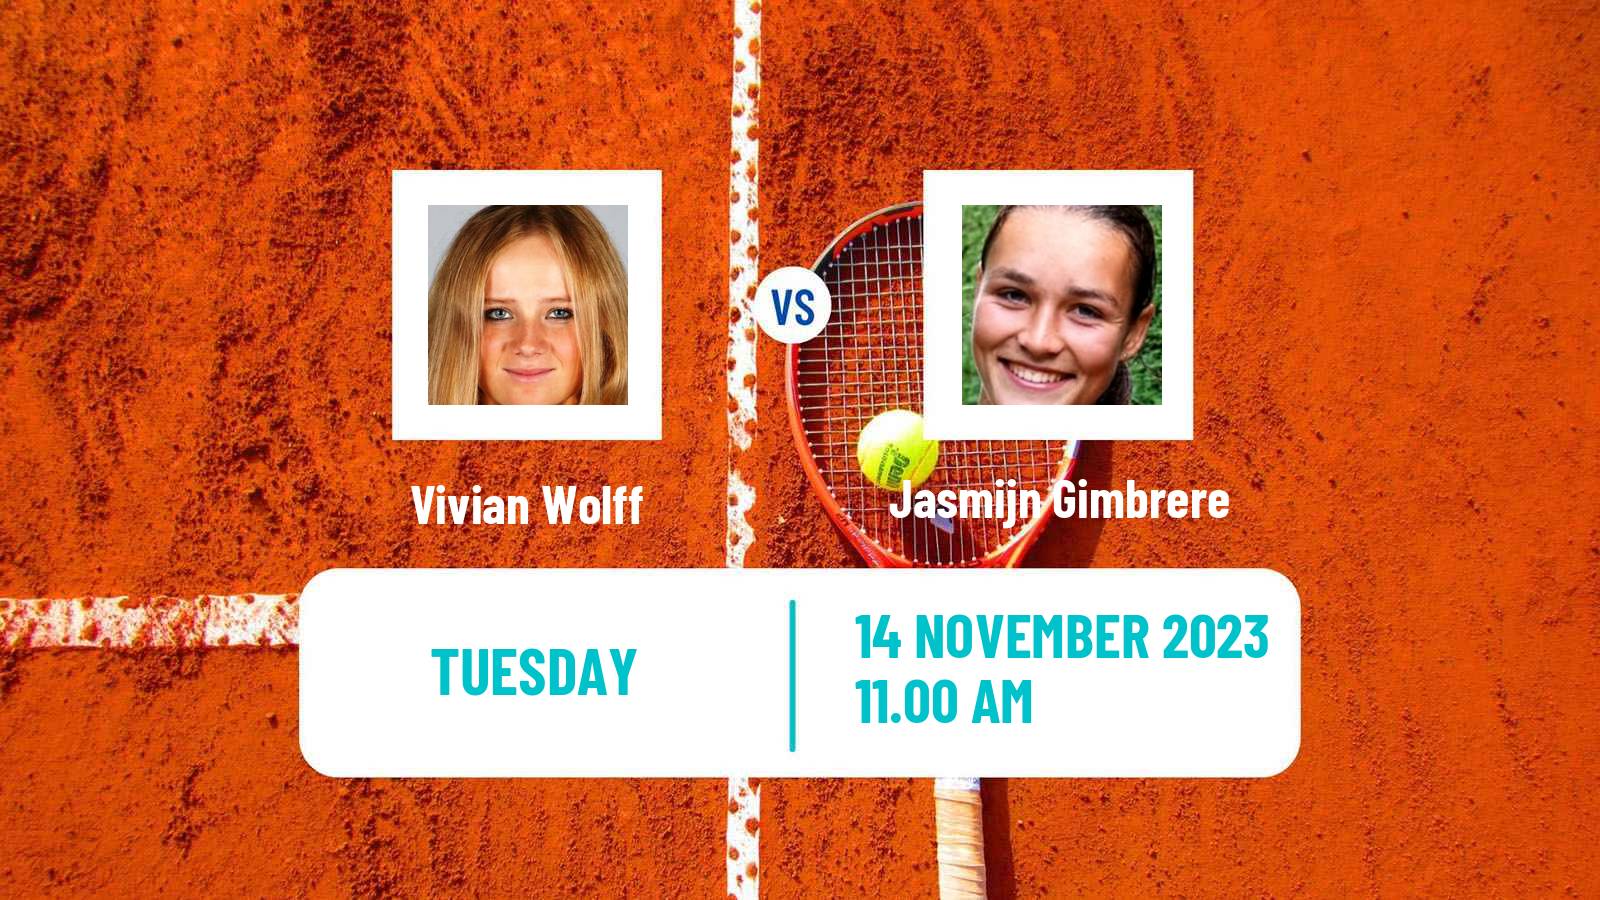 Tennis ITF W40 Petange Women Vivian Wolff - Jasmijn Gimbrere